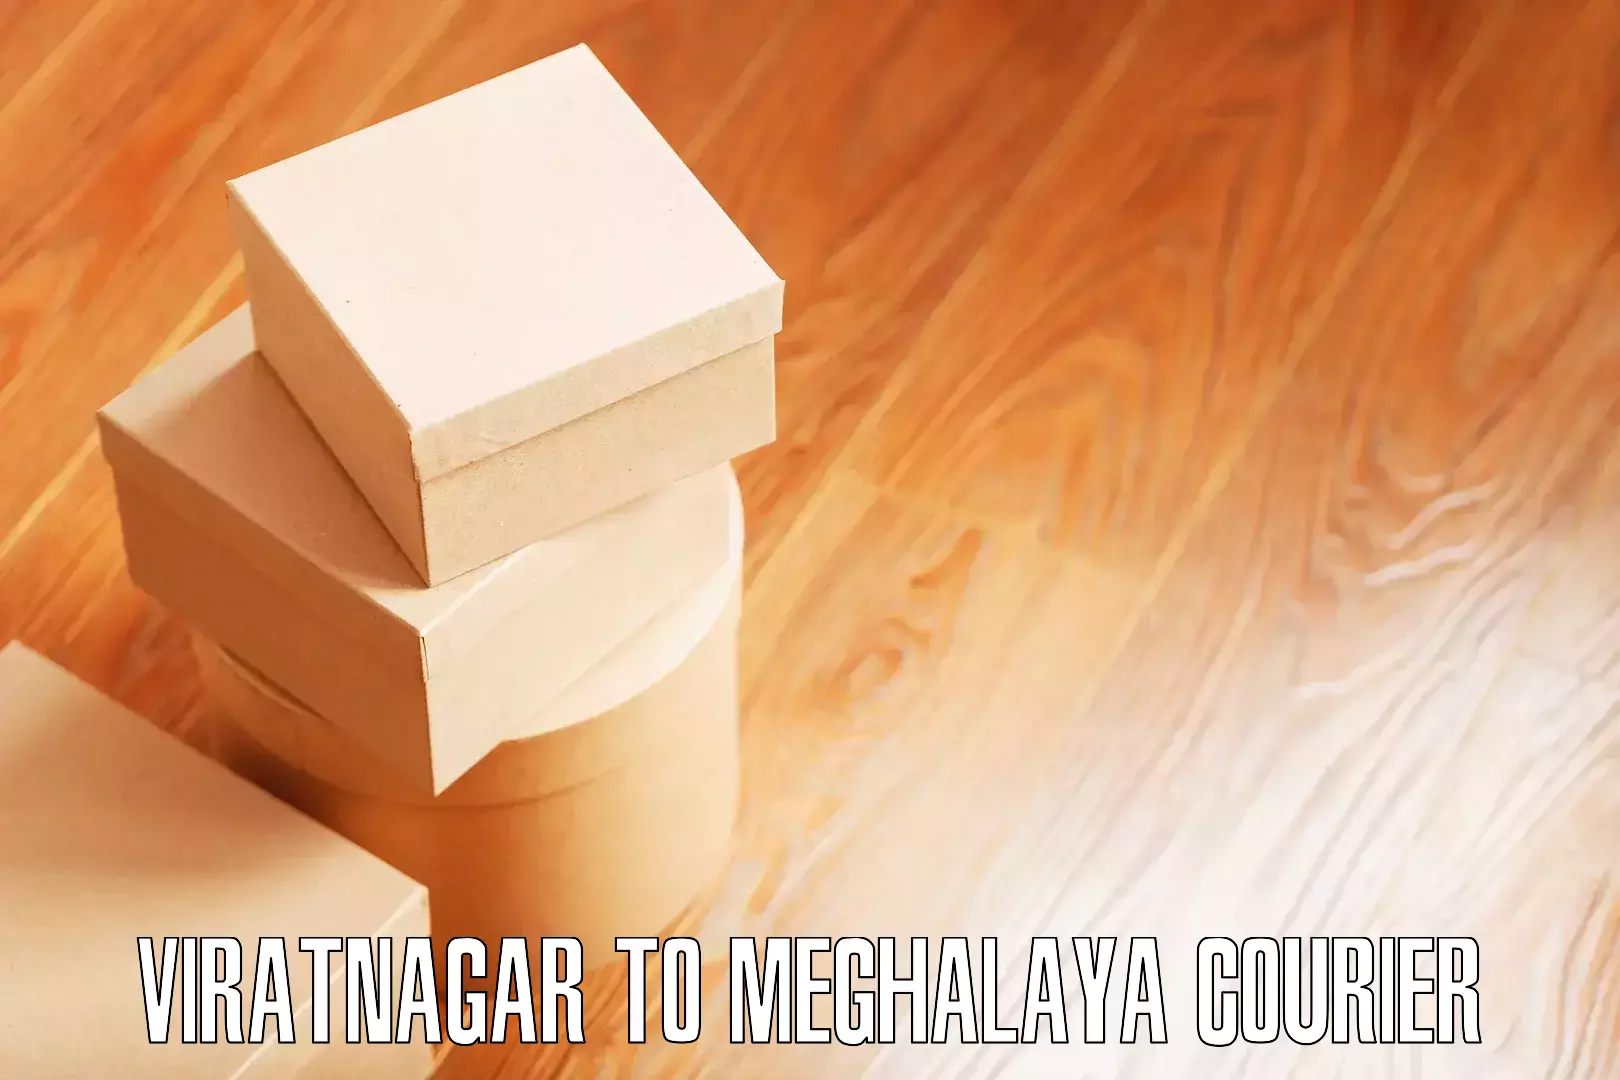 Furniture transport and logistics Viratnagar to Meghalaya